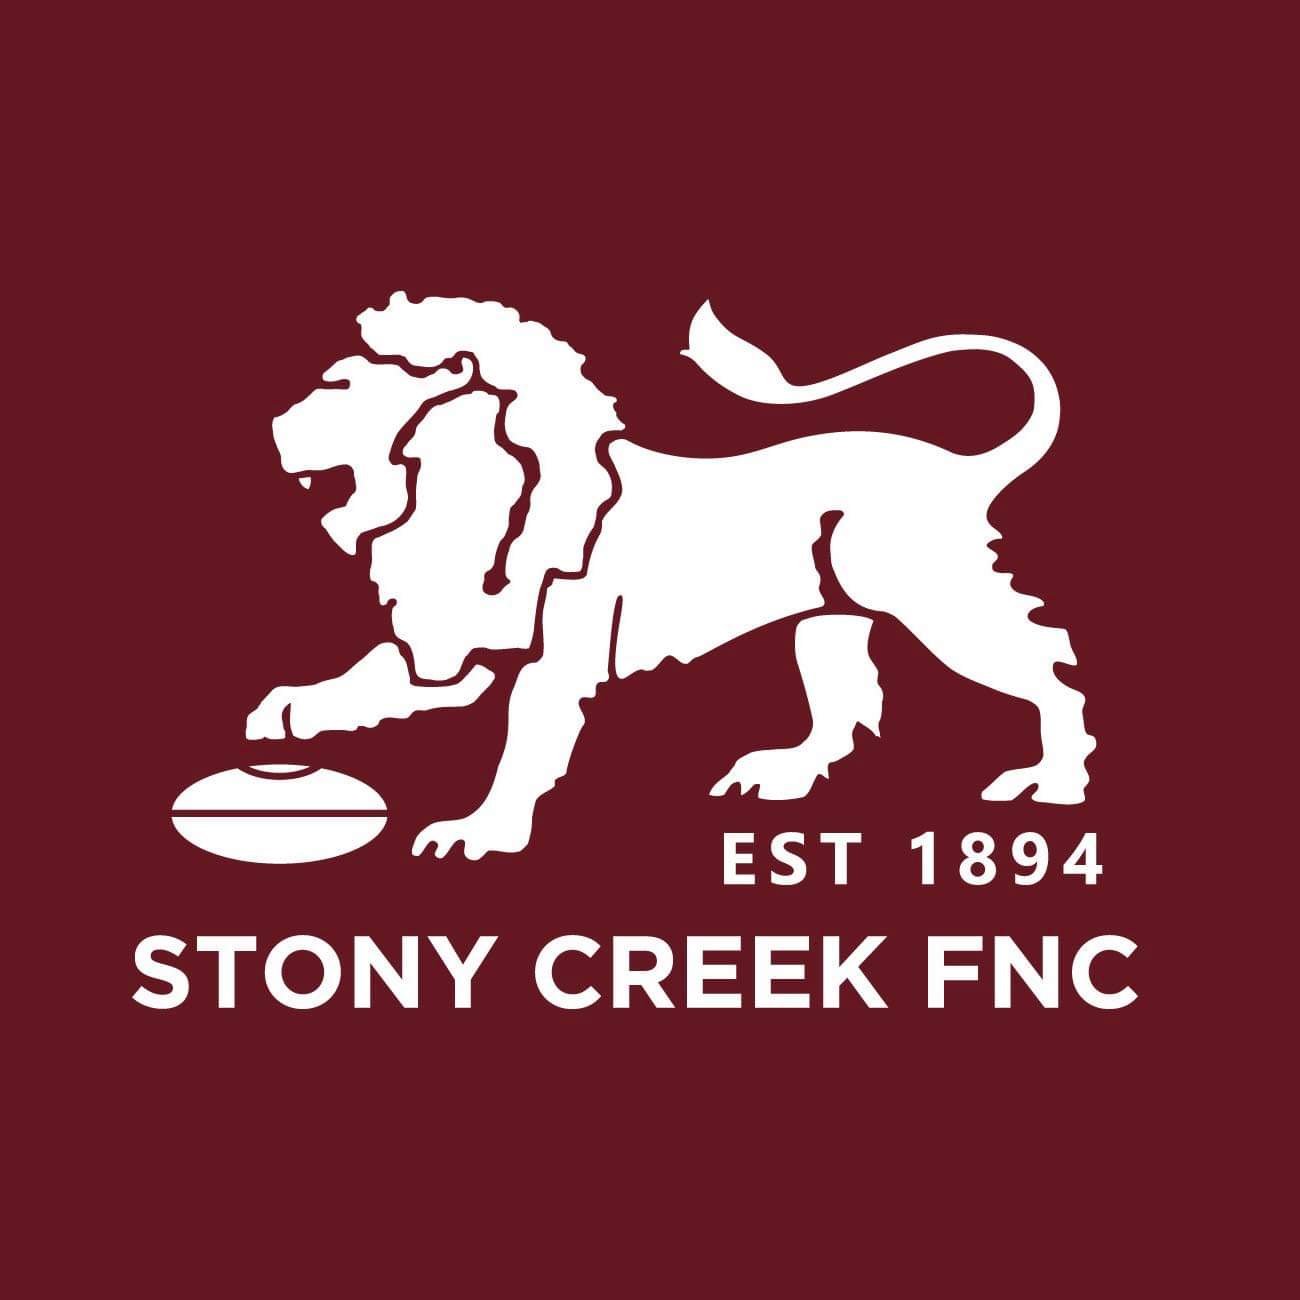 Stony Creek FNC